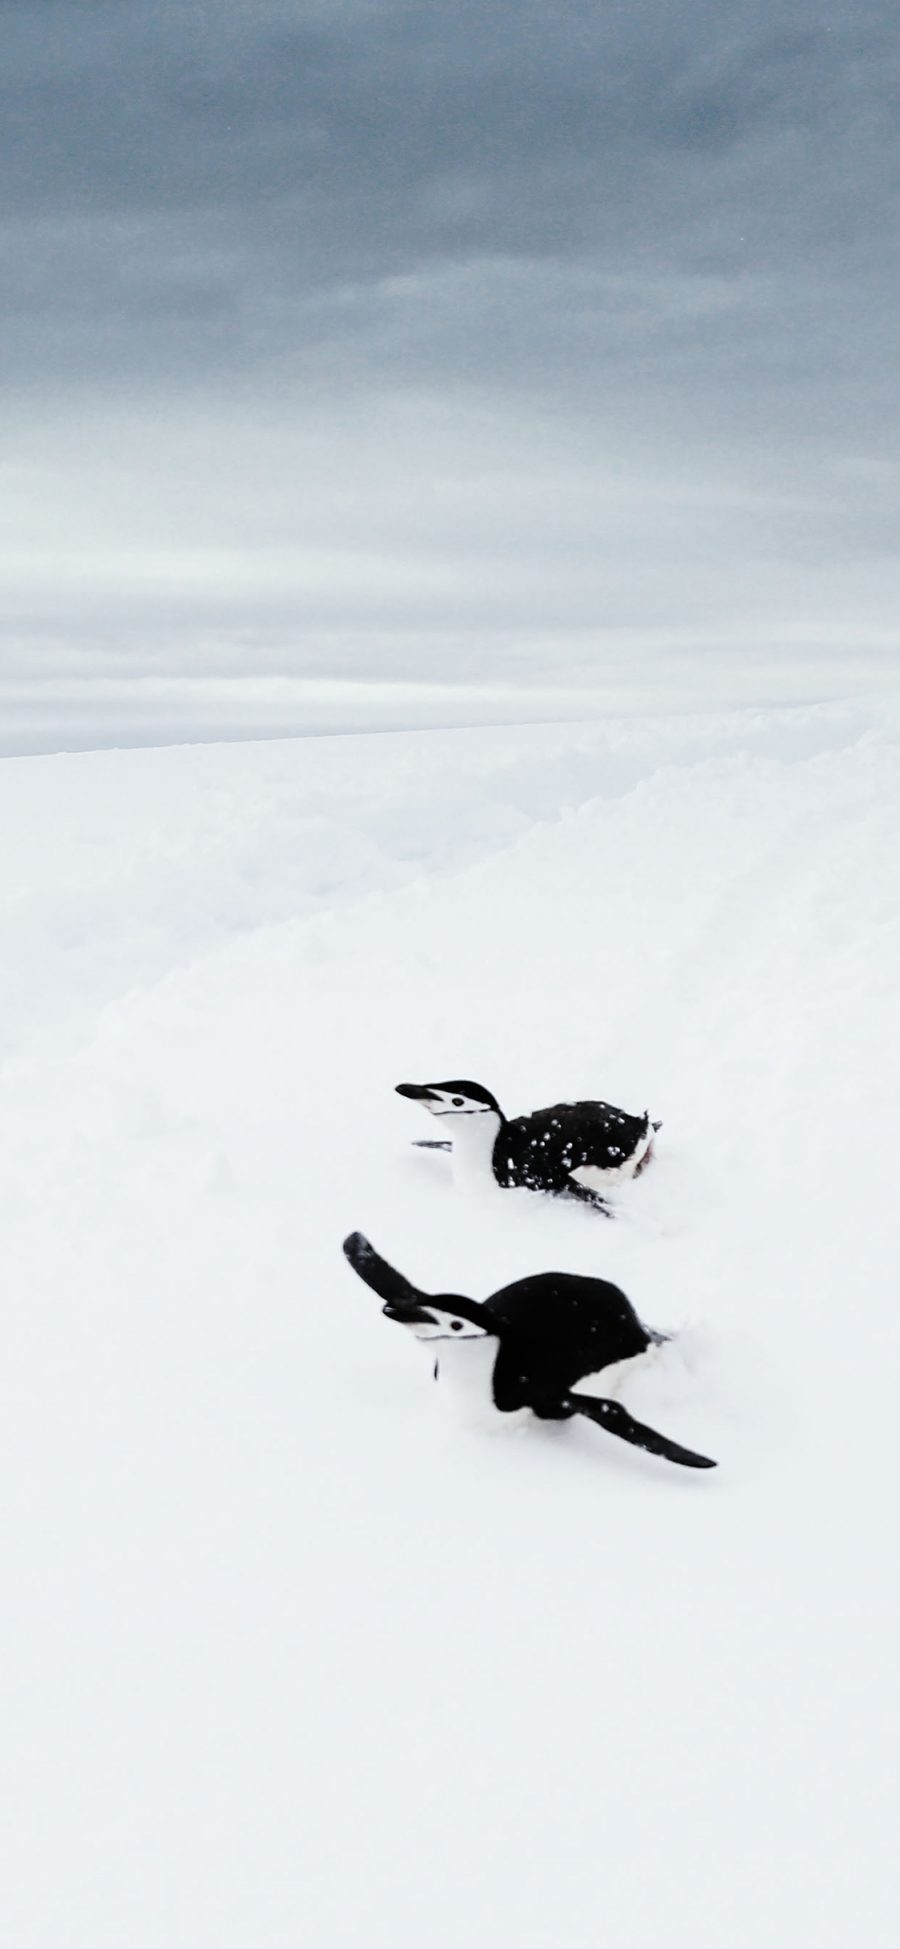 [2436×1125]企鹅 南极 雪地 白色 可爱 萌 苹果手机壁纸图片